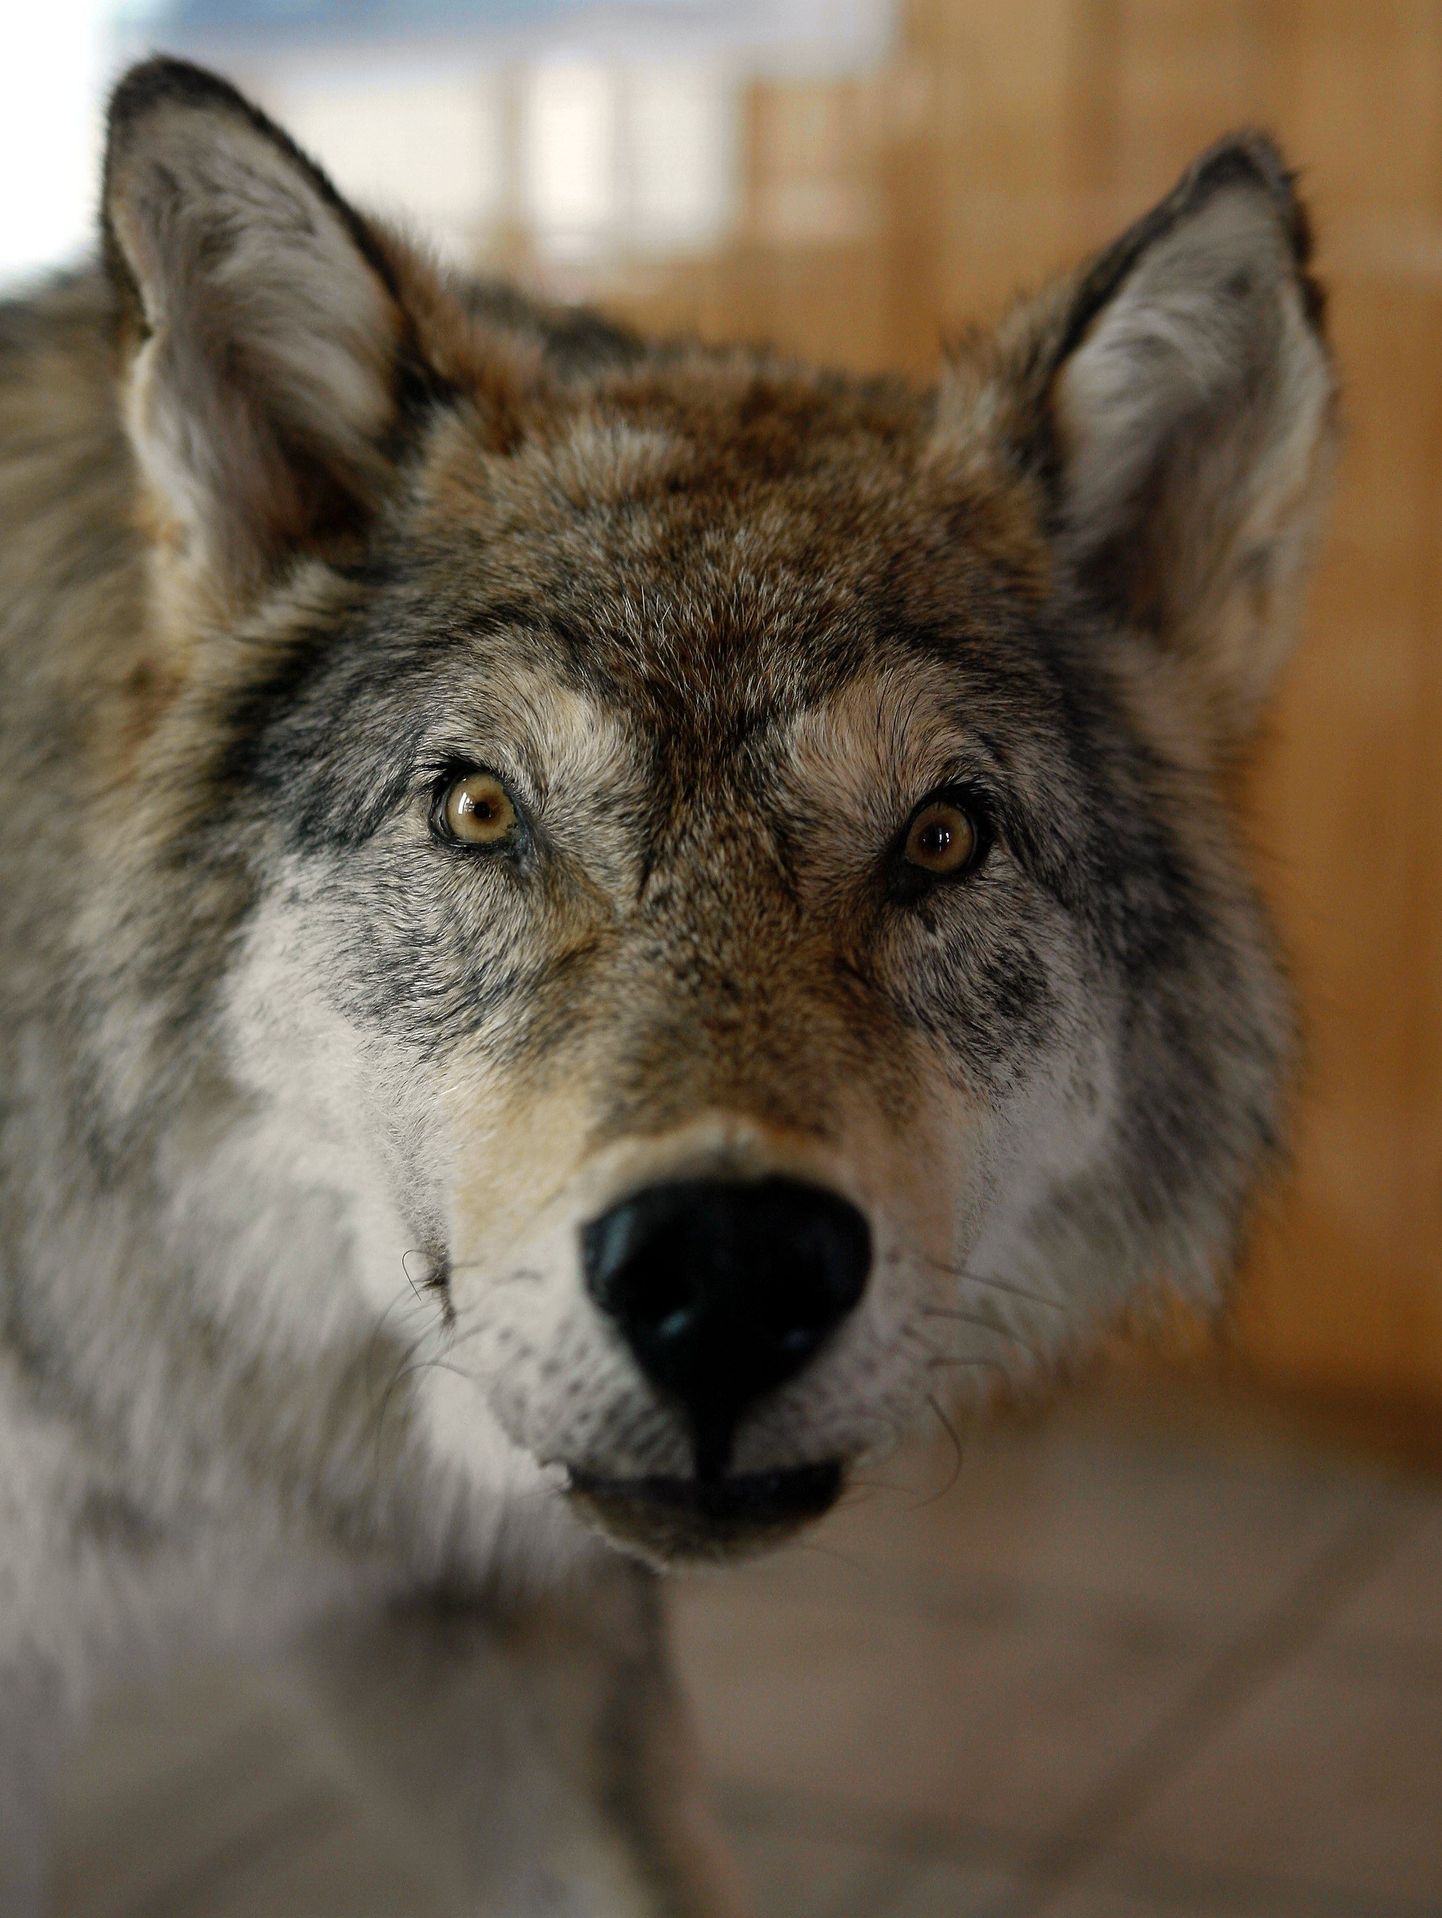 Riiklik looduskaitsekeskus on Viljandimaalt esitatud viie avalduse põhjal hüvitanud kahel aastal huntide, karude ja ilveste tekitatud kahju.